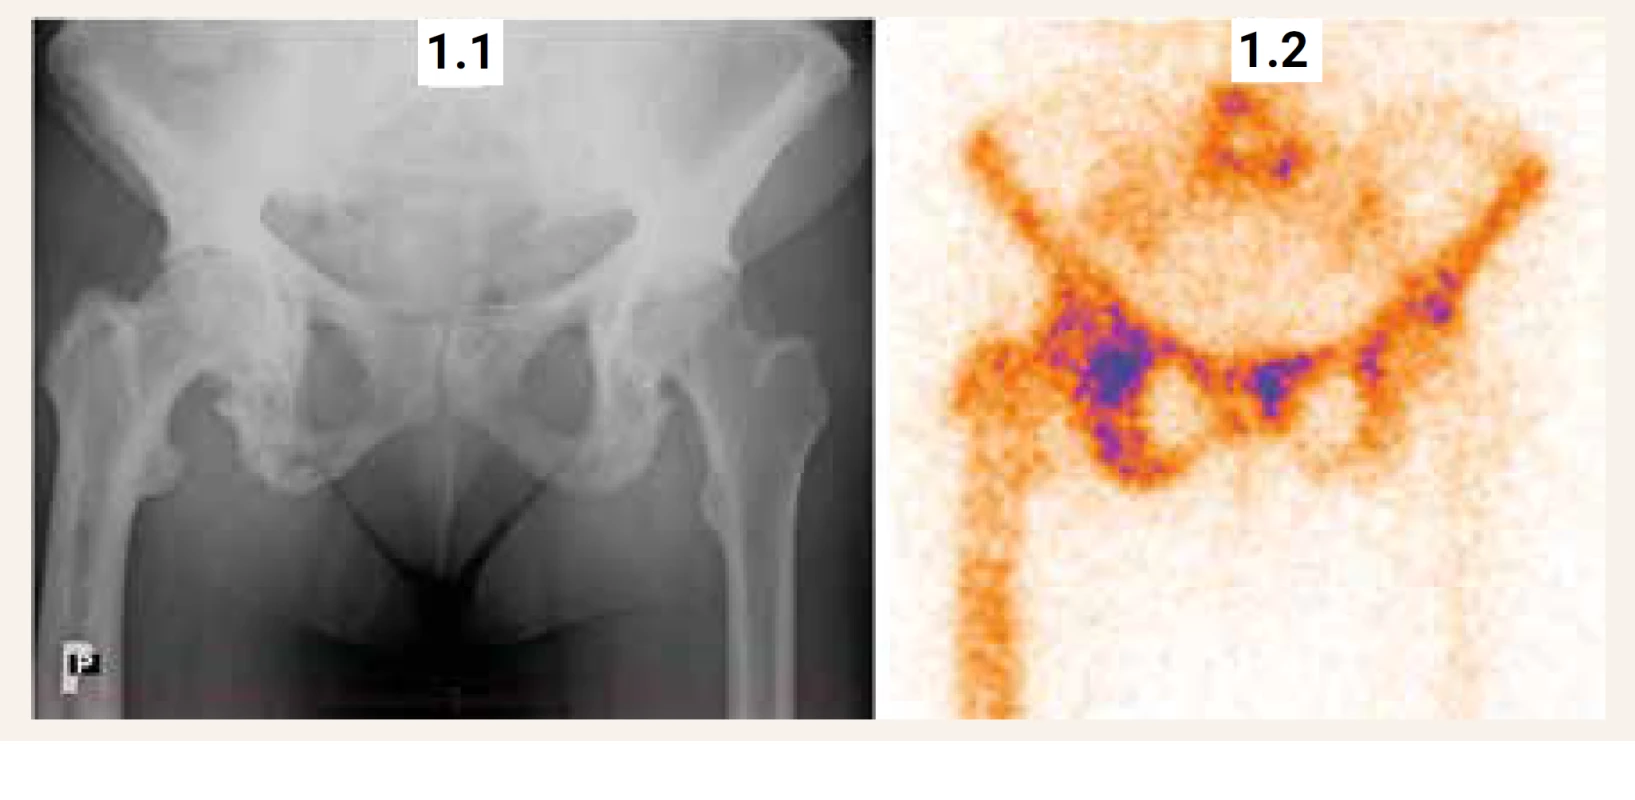 RTG a scintigrafický nález u 63leté ženy s Pagetovou kostní chorobou v oblasti pánve a pravého femuru.
(1.1) RTG nález: hrubá skvrnitě pruhovitá přestavba pánve a pravého femuru s převahou sklerotických změn,
která svědčí pro Pagetovu kostní chorobu (1.2) Scintigrafický nález: patologicky zvýšená aktivita v oblasti L5,
kosti křížové, v obou kostech kyčelních, sedacích i stydkých a v proximálních třech čtvrtinách pravého femuru